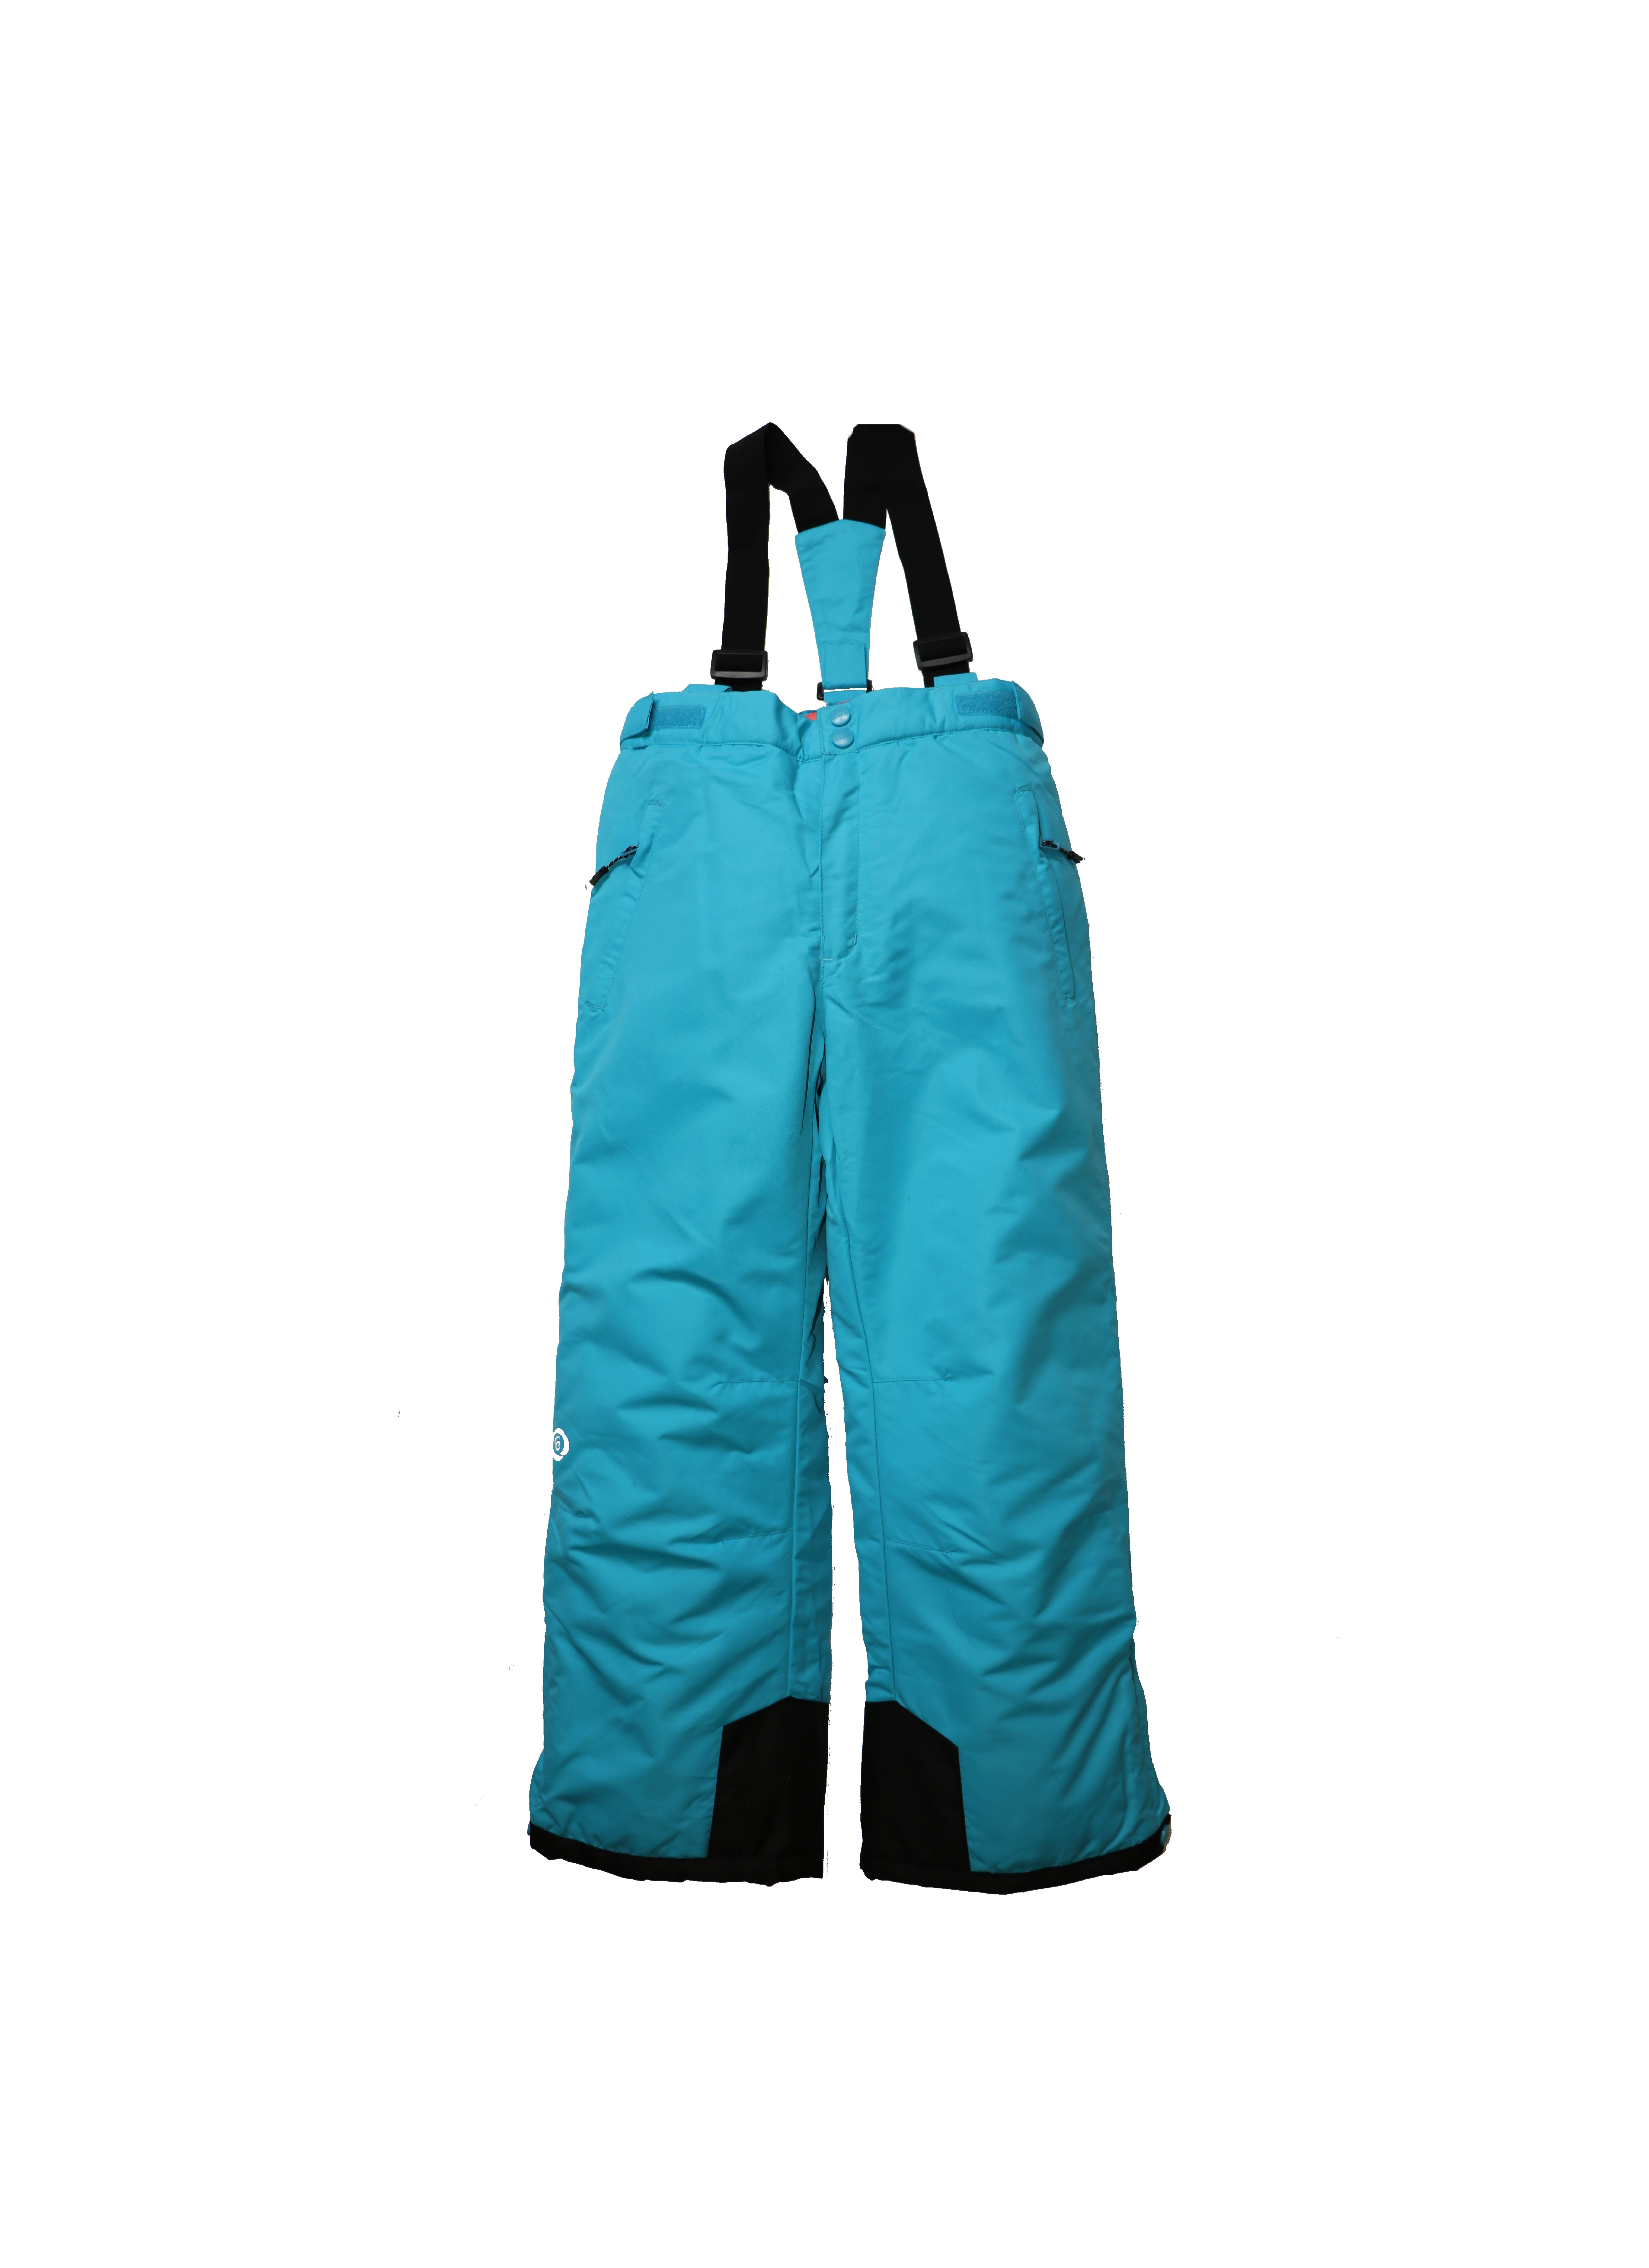 Dětské lyžařské kalhoty HB03-M2 tyrkysová Barva: tyrkysová, Velikost: 140 - 146 cm